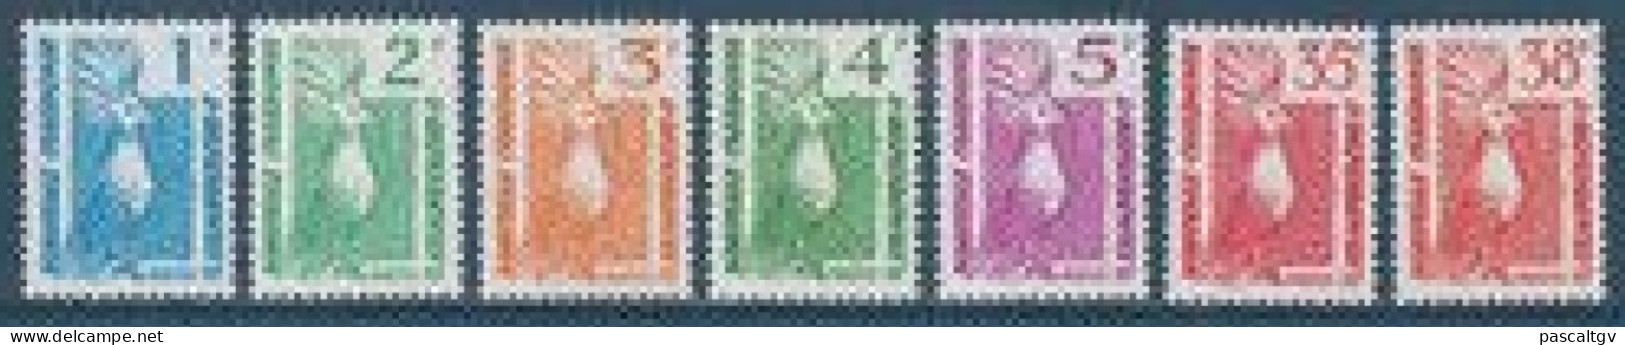 Nouvelle Calédonie - 1985 - Série N°491 à 497 ** - Unused Stamps